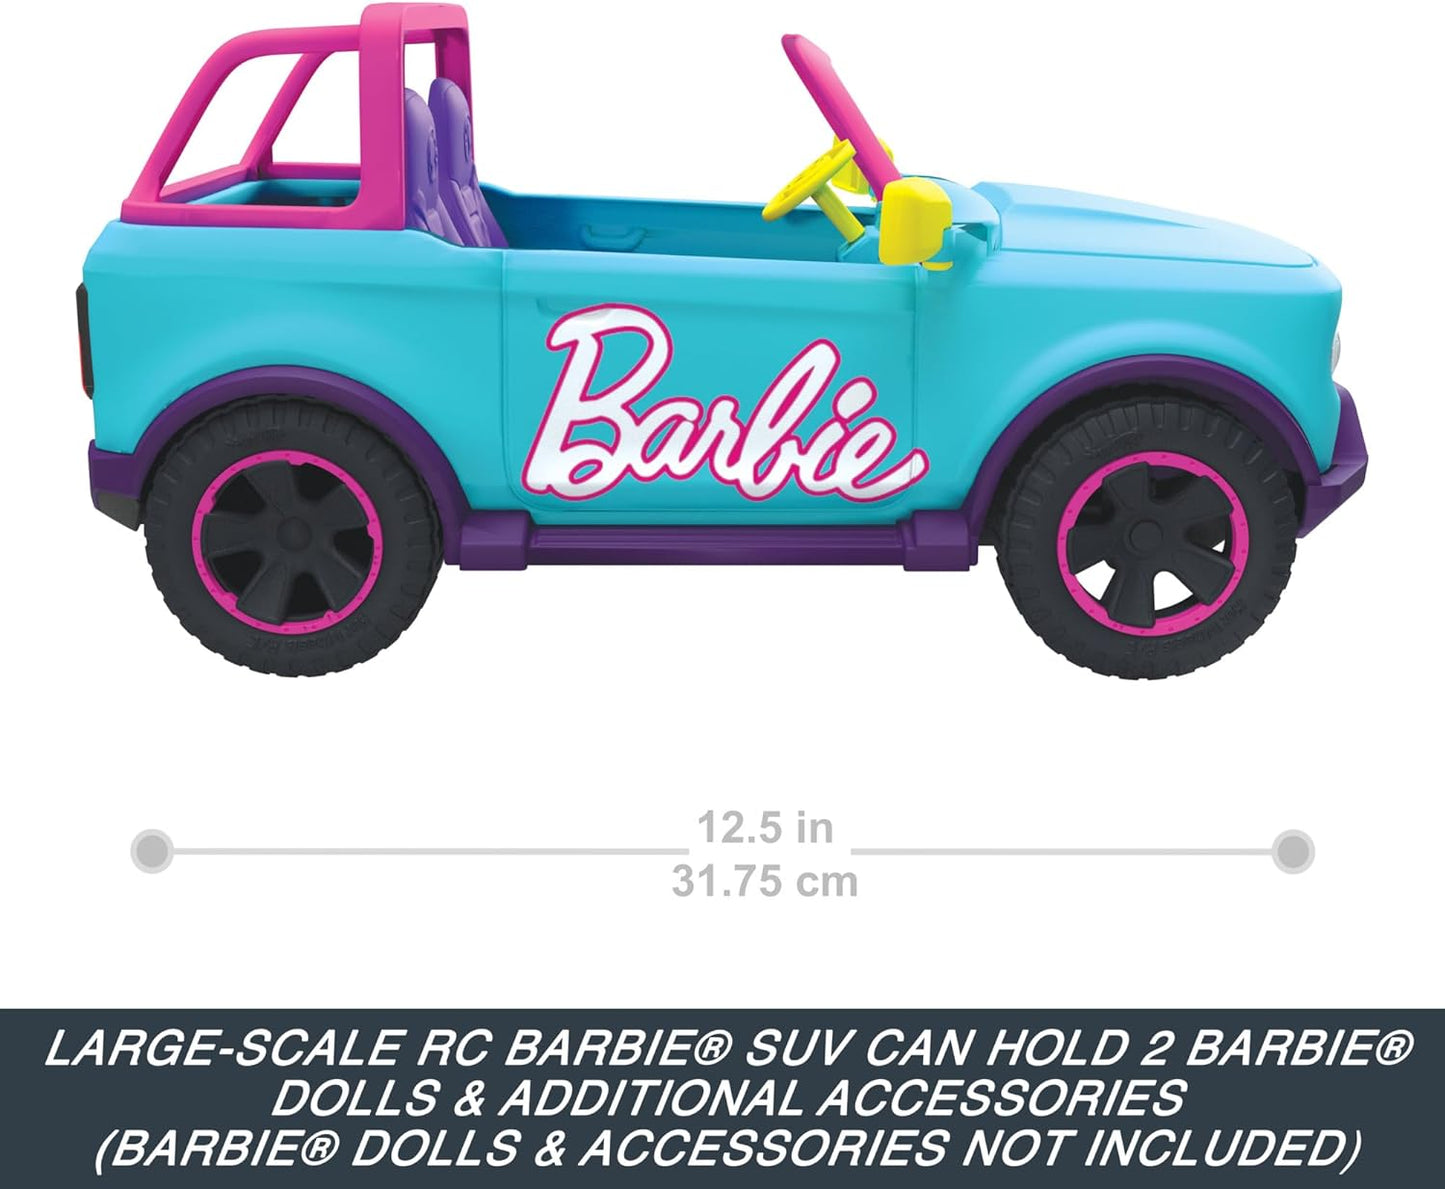 Hot Wheels Barbie RC SUV e adesivos, pode conter e armazenar 2 bonecas Barbie e acessórios, adesivos aplicados por crianças para personalização, HTP53